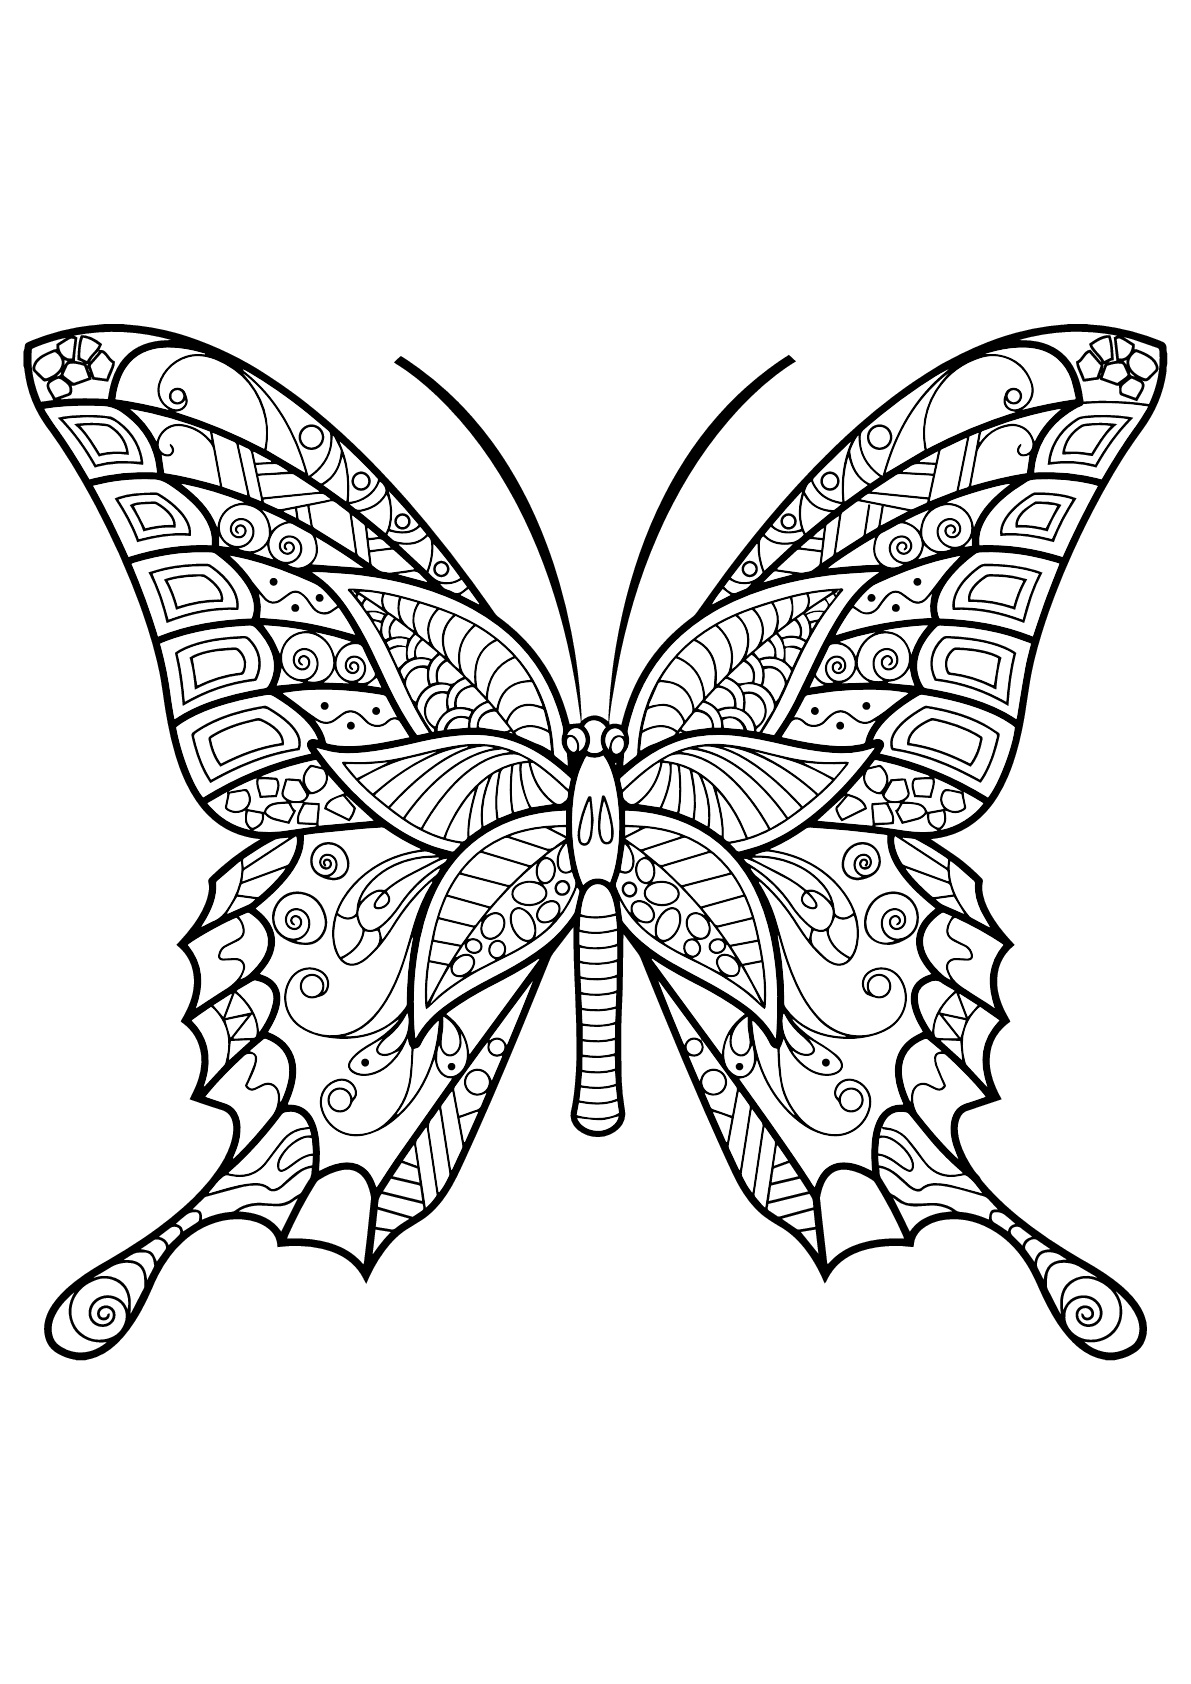 Mariposa con bellos e intrincados dibujos - 6